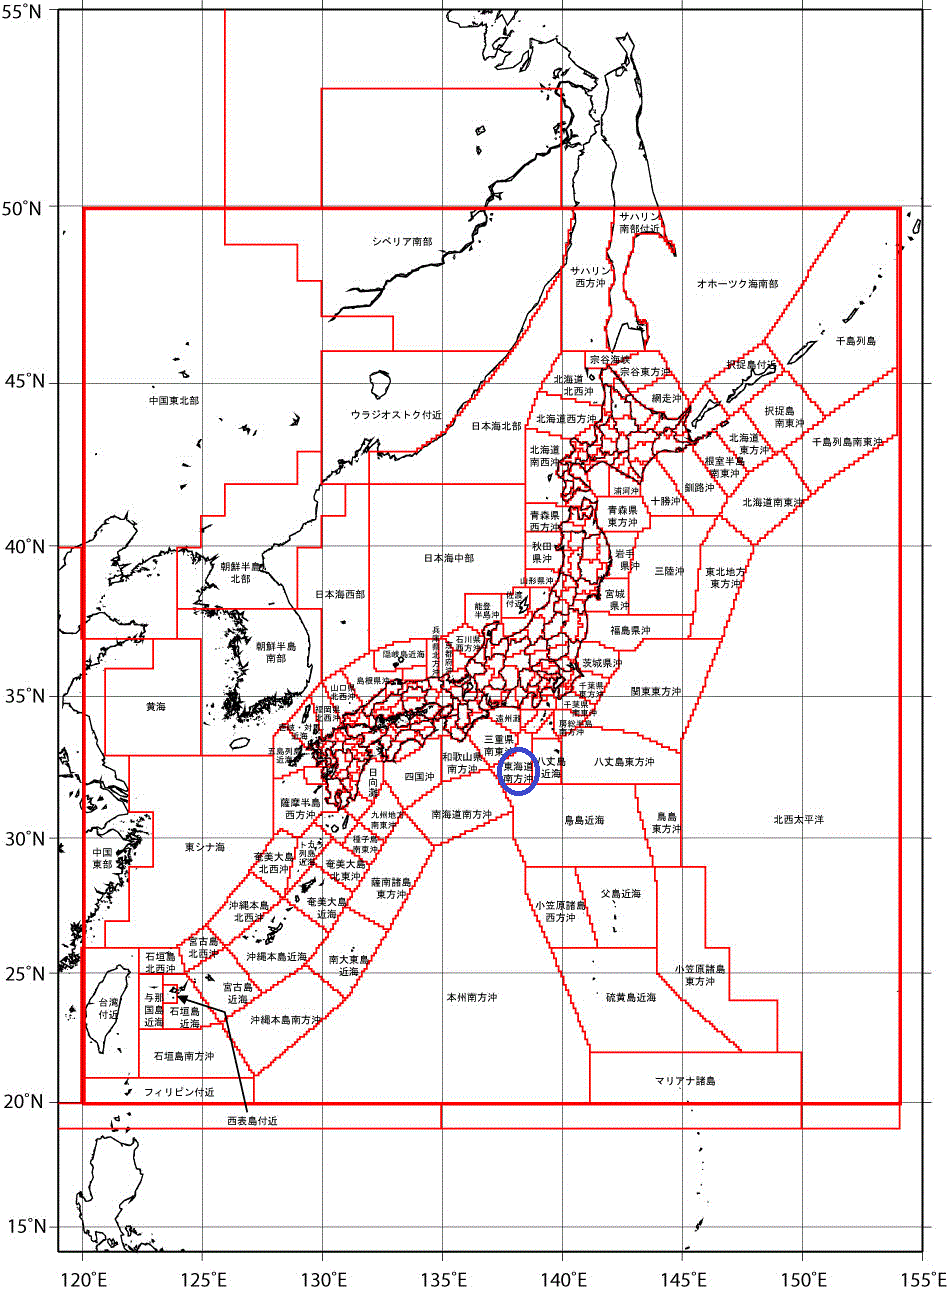 地震情報で用いる震央地名（日本全体図）